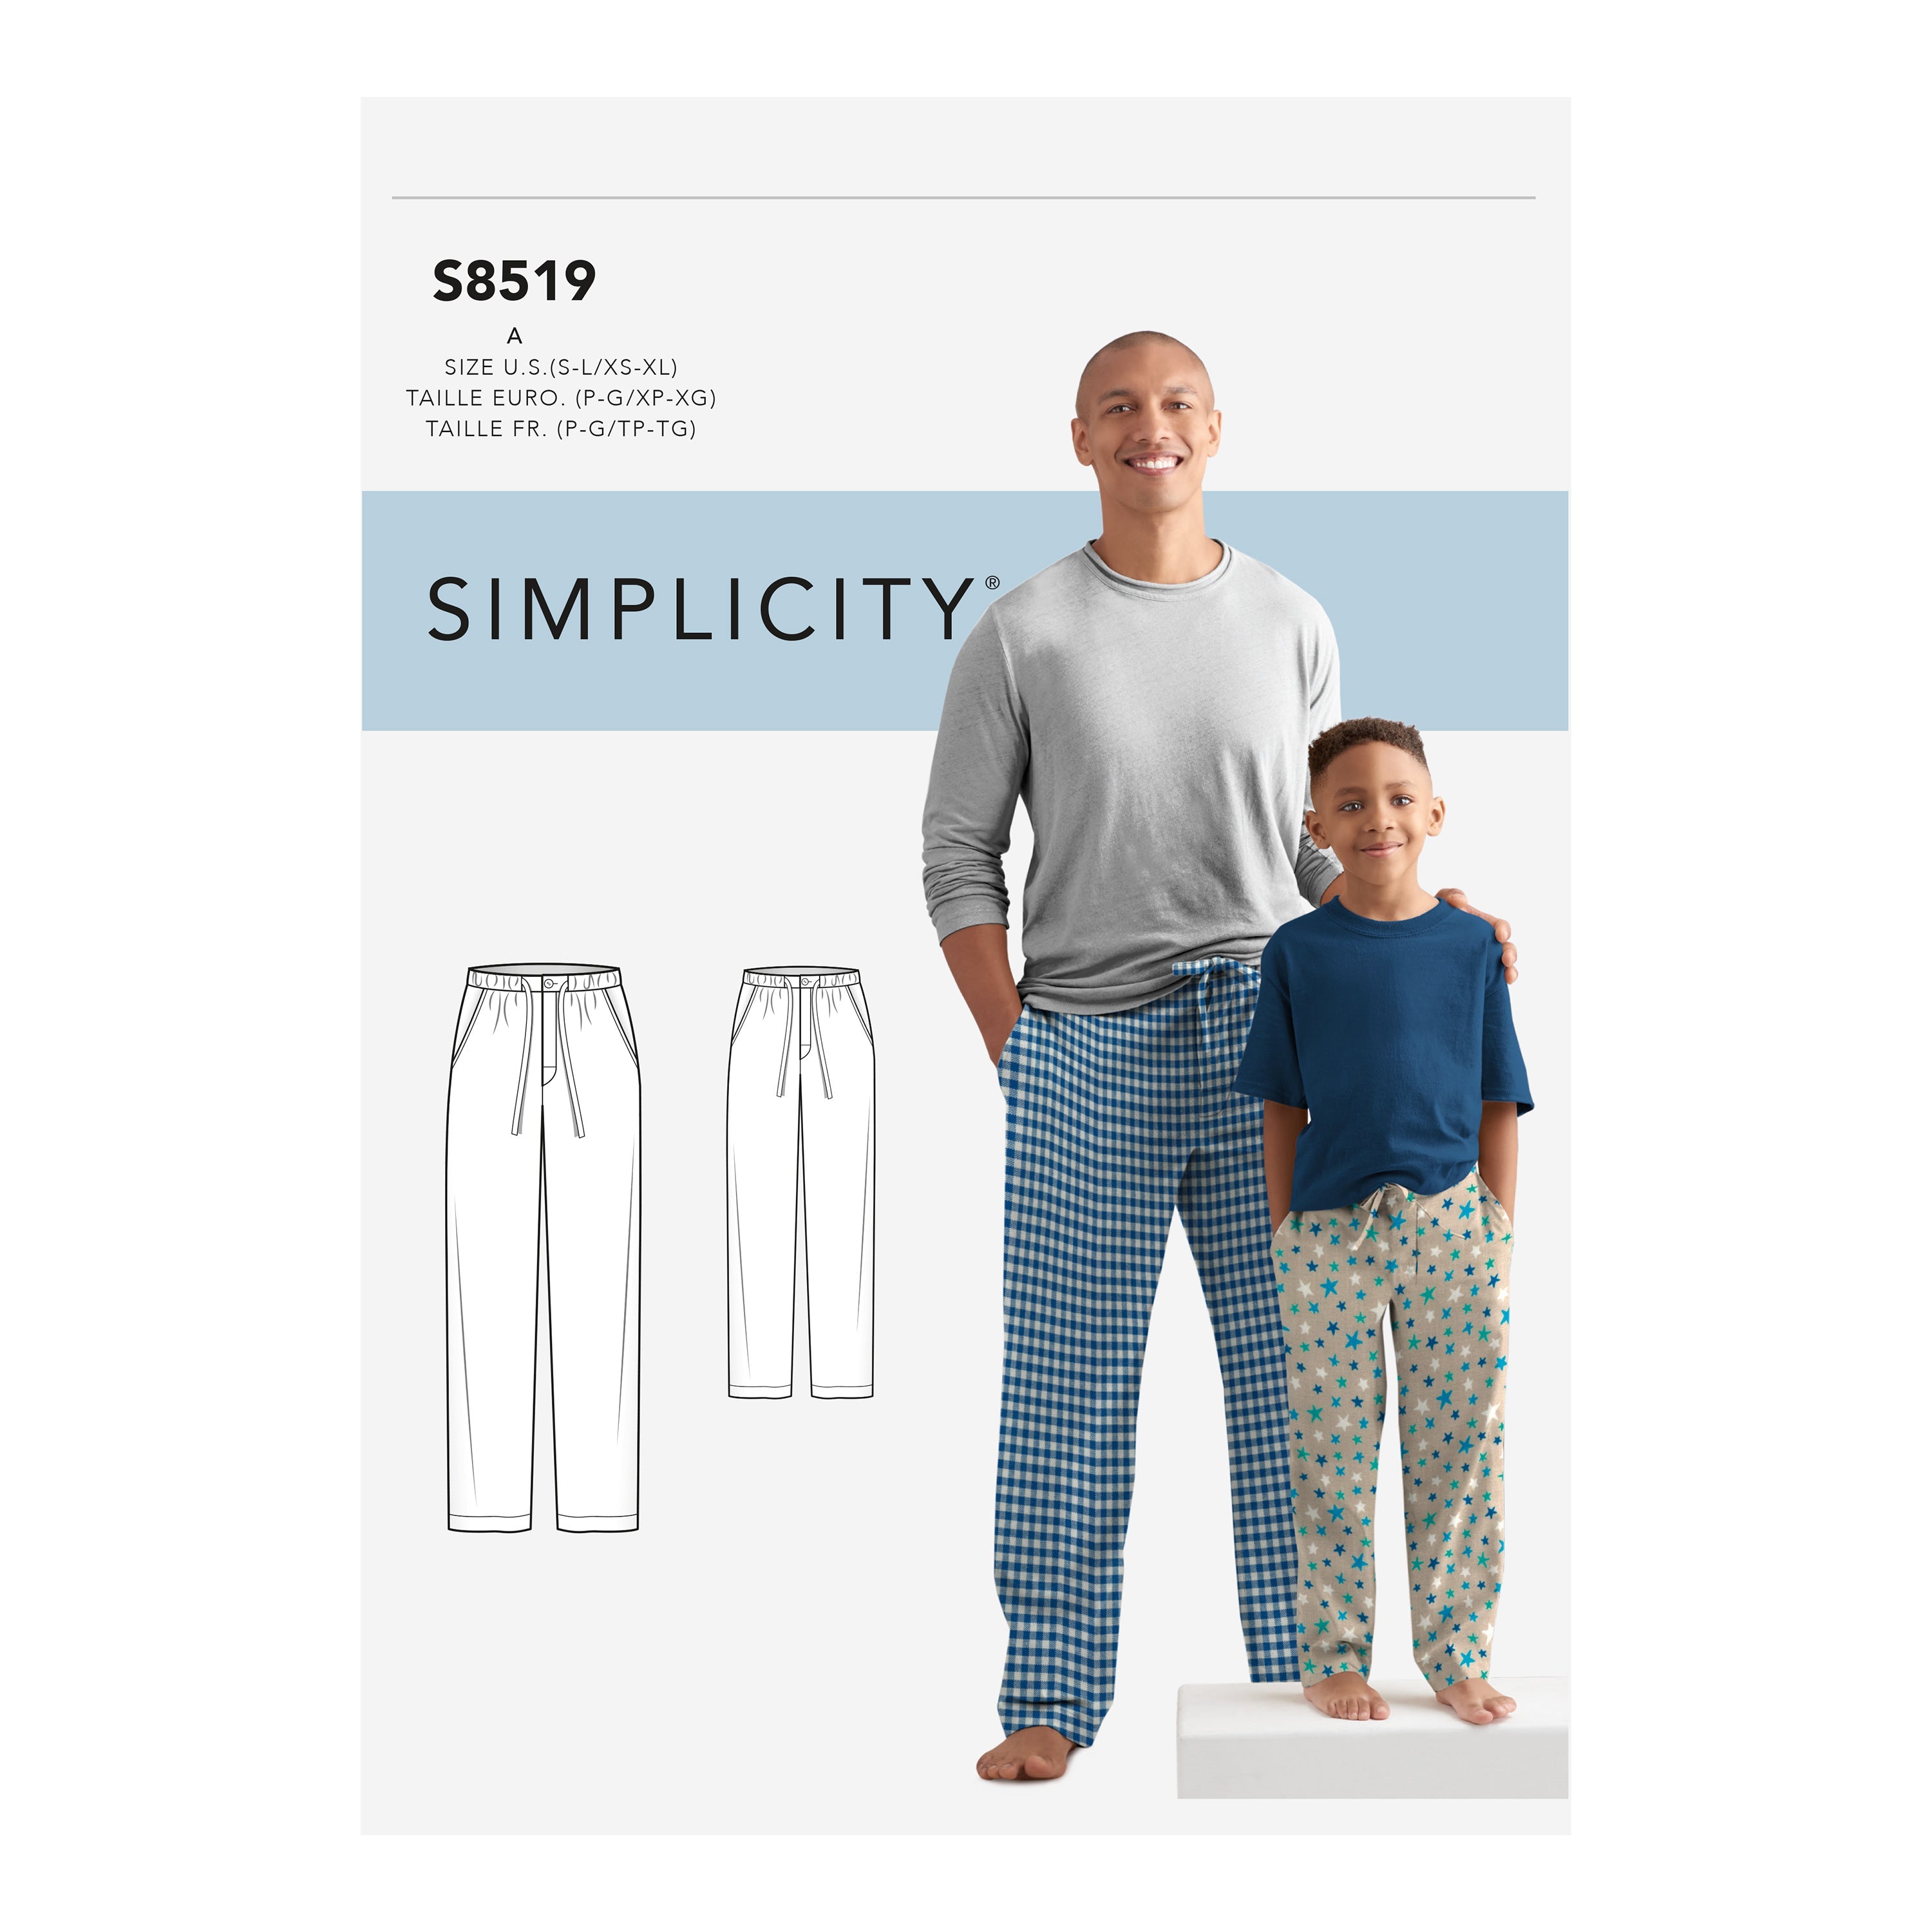 Simplicity 1505 Husky Boys' & Big & Tall Men's Tops and Pants